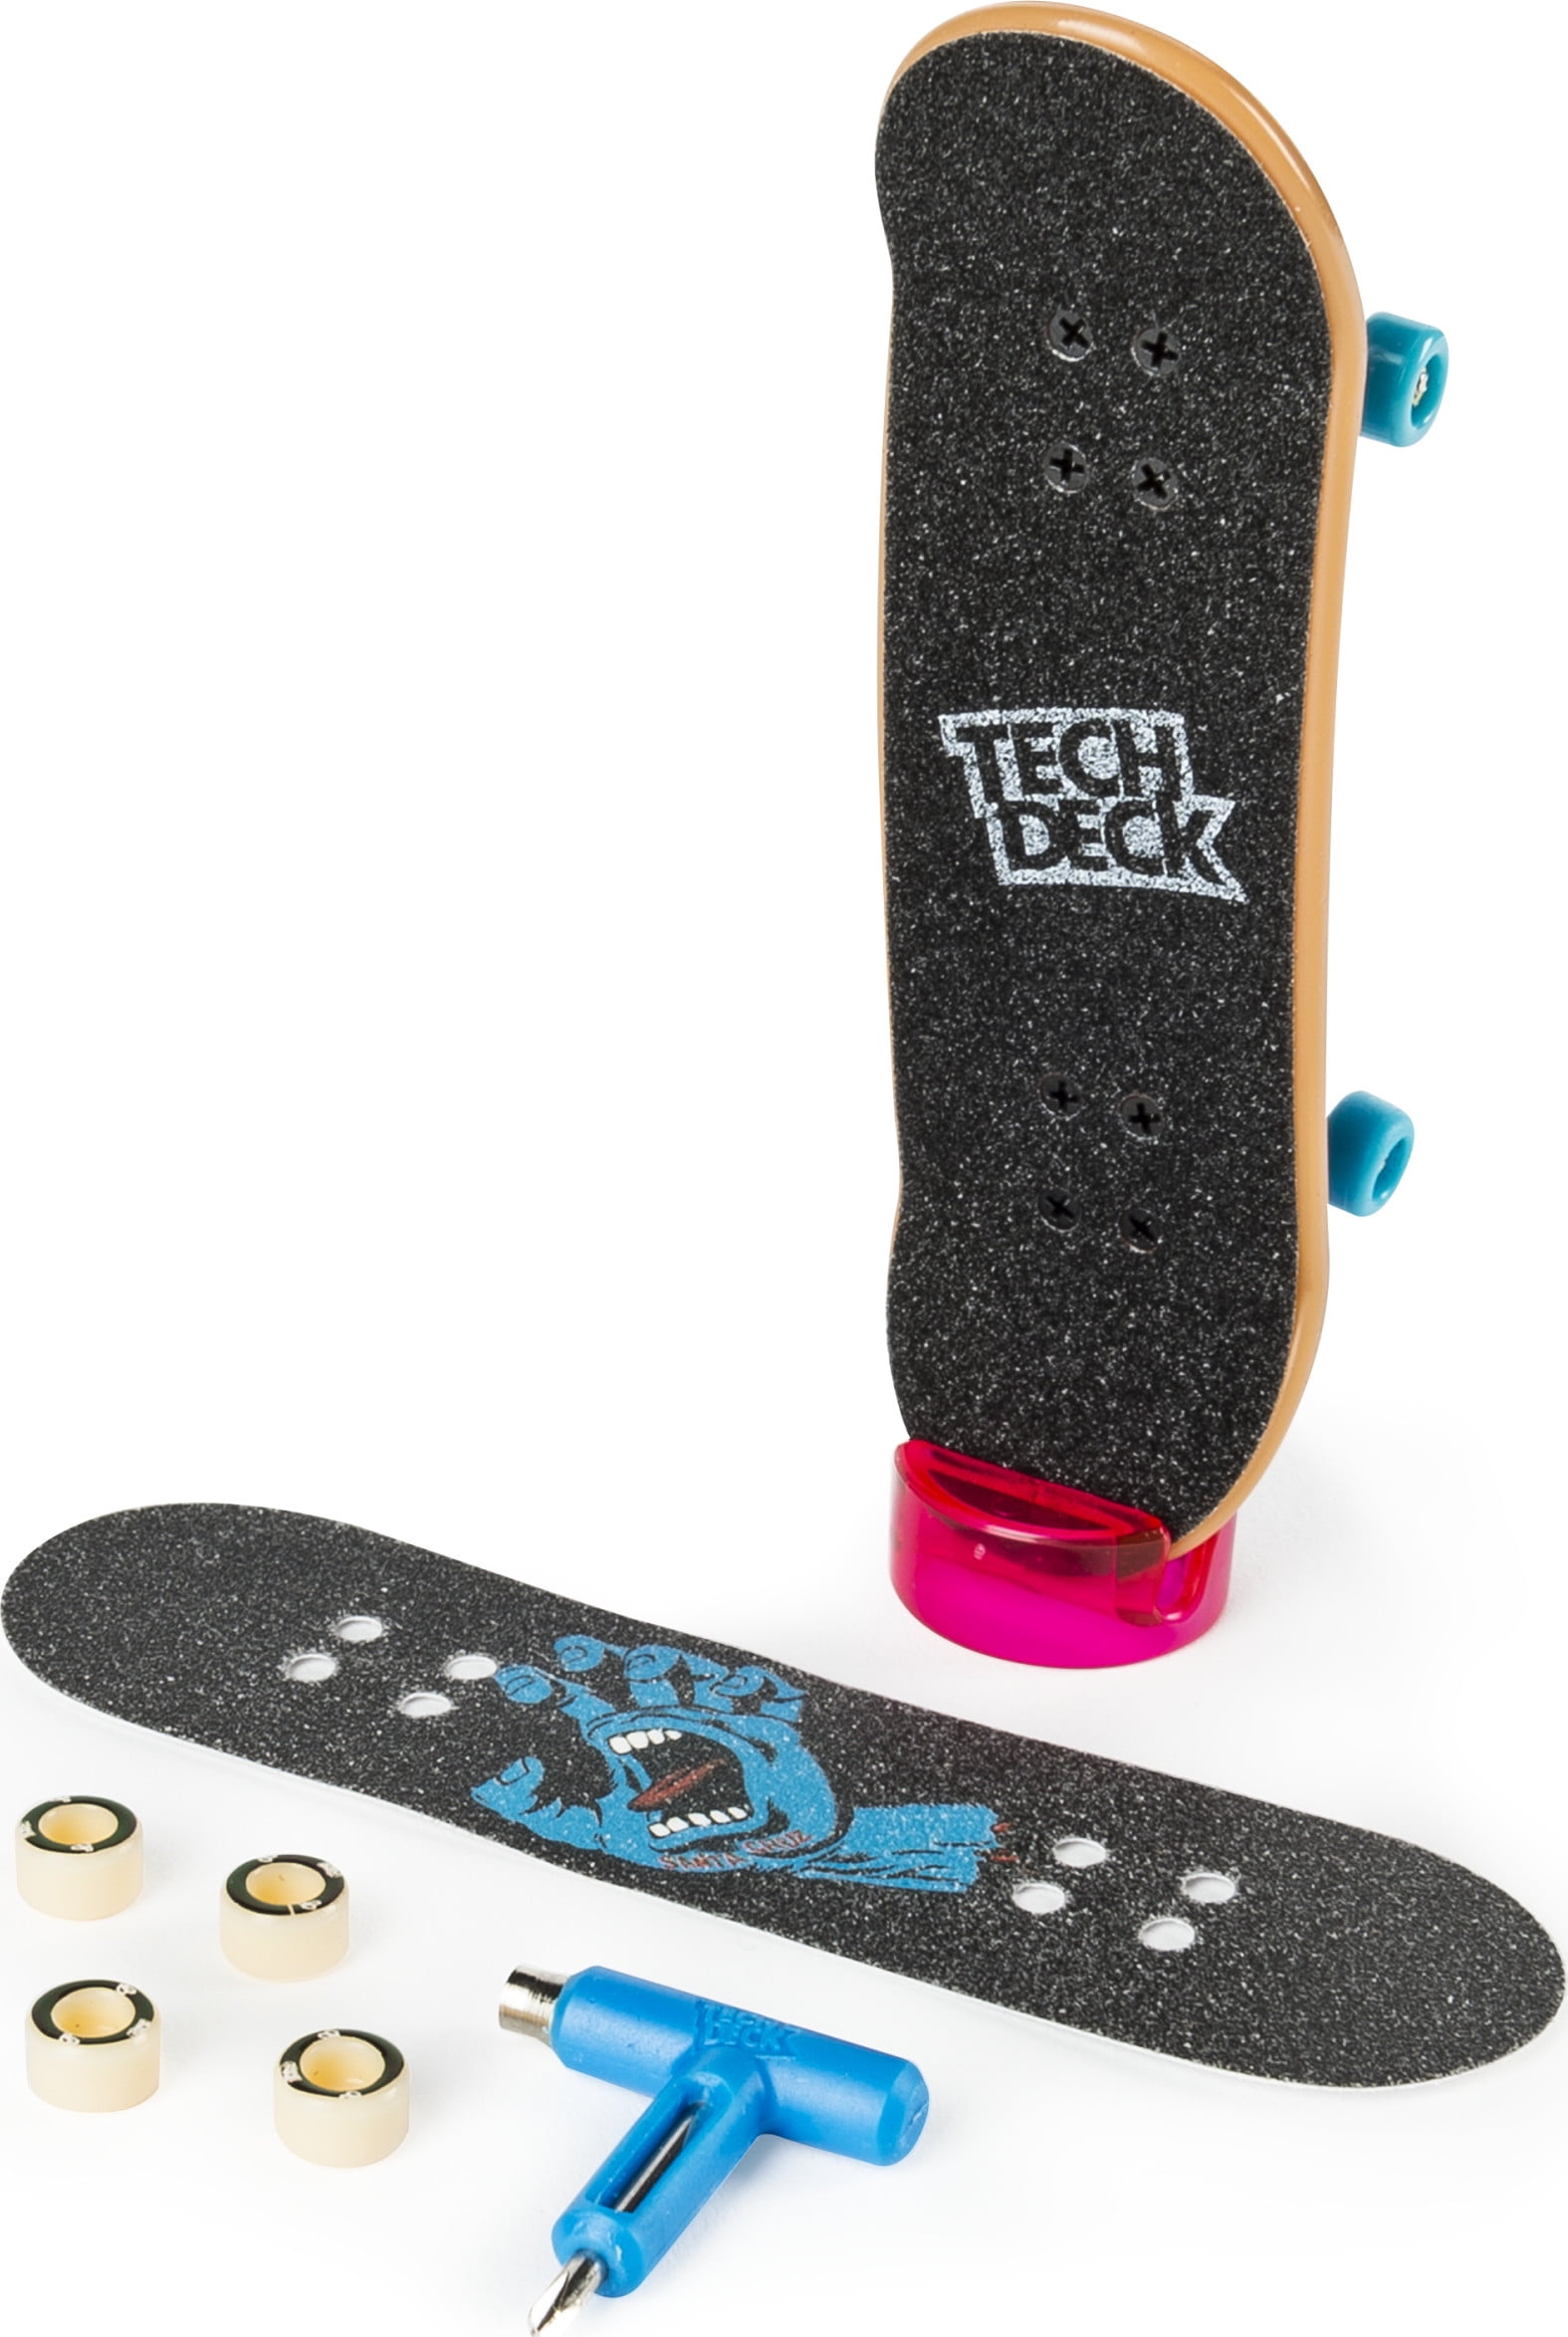 12 Wooden Deck Fingerboard Skateboard Cuttable Fingerboard Deck Grip Tape WT 